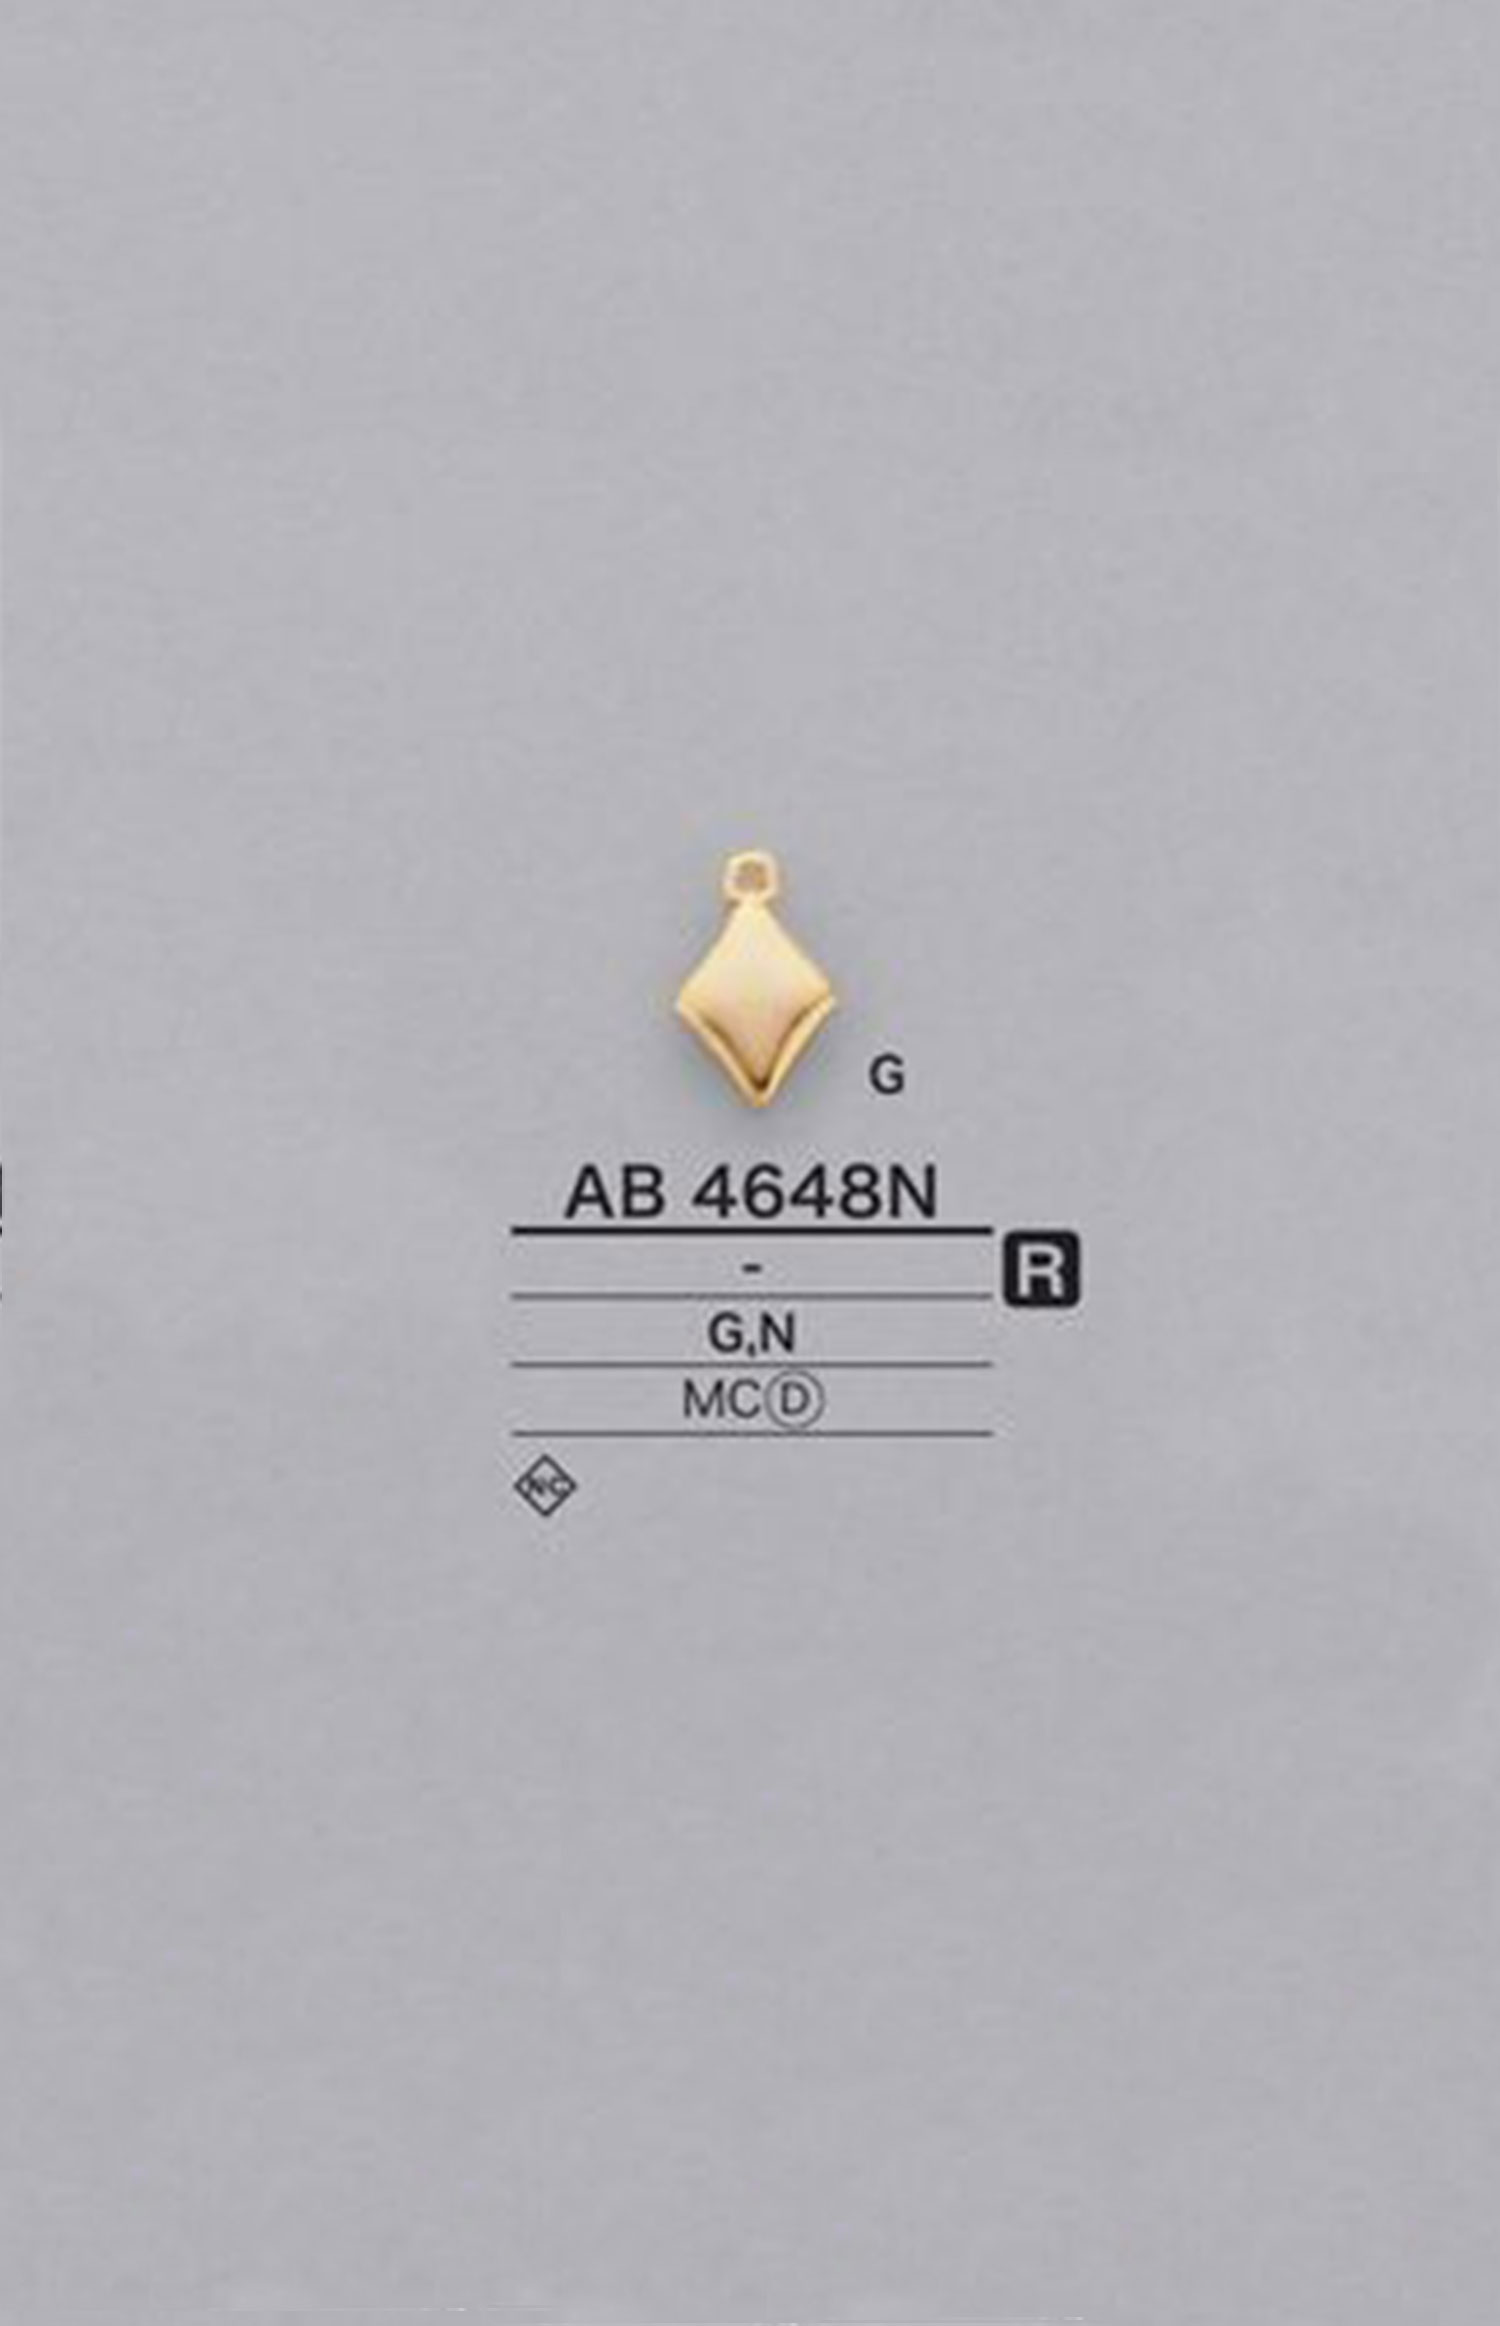 AB4648N 鑽石圖形元素零件[雜貨等] 愛麗絲鈕扣